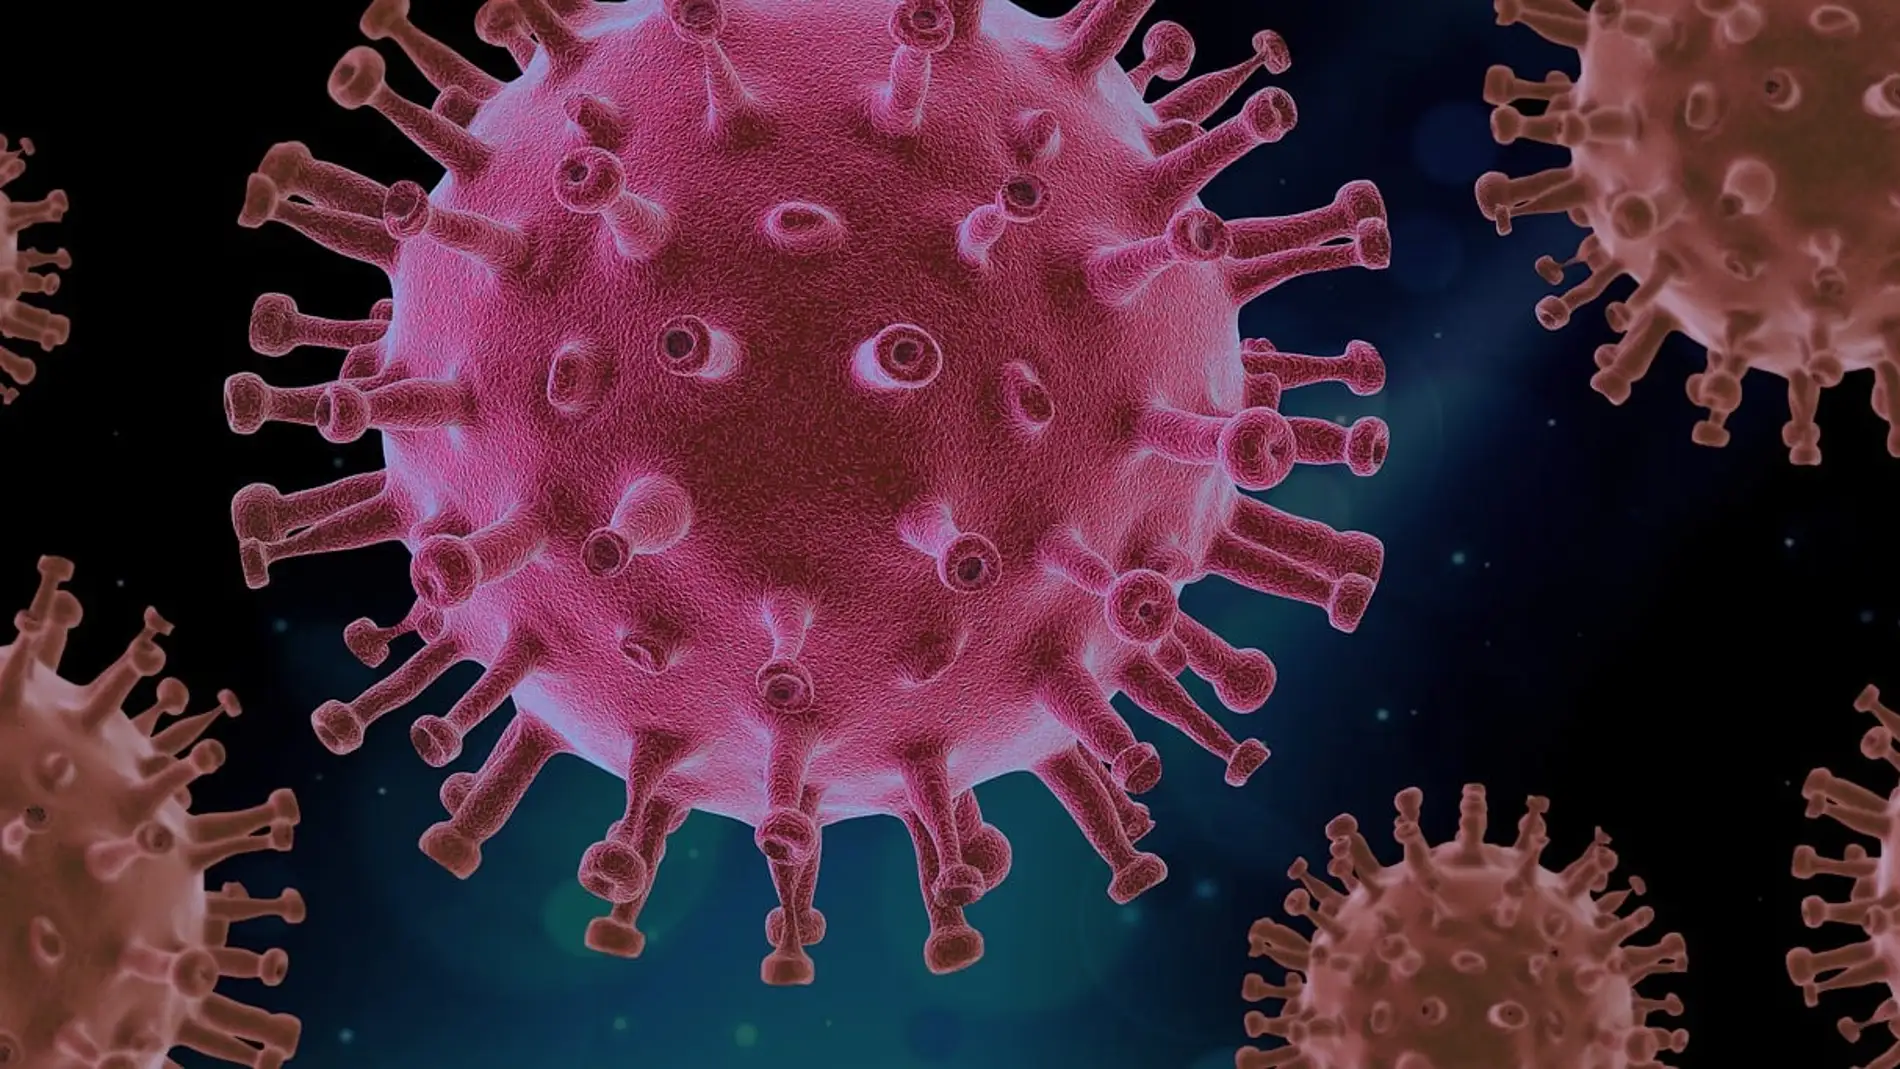 Un virólogo del CSIC revela el virus al que más temen los expertos como causante de una futura pandemia